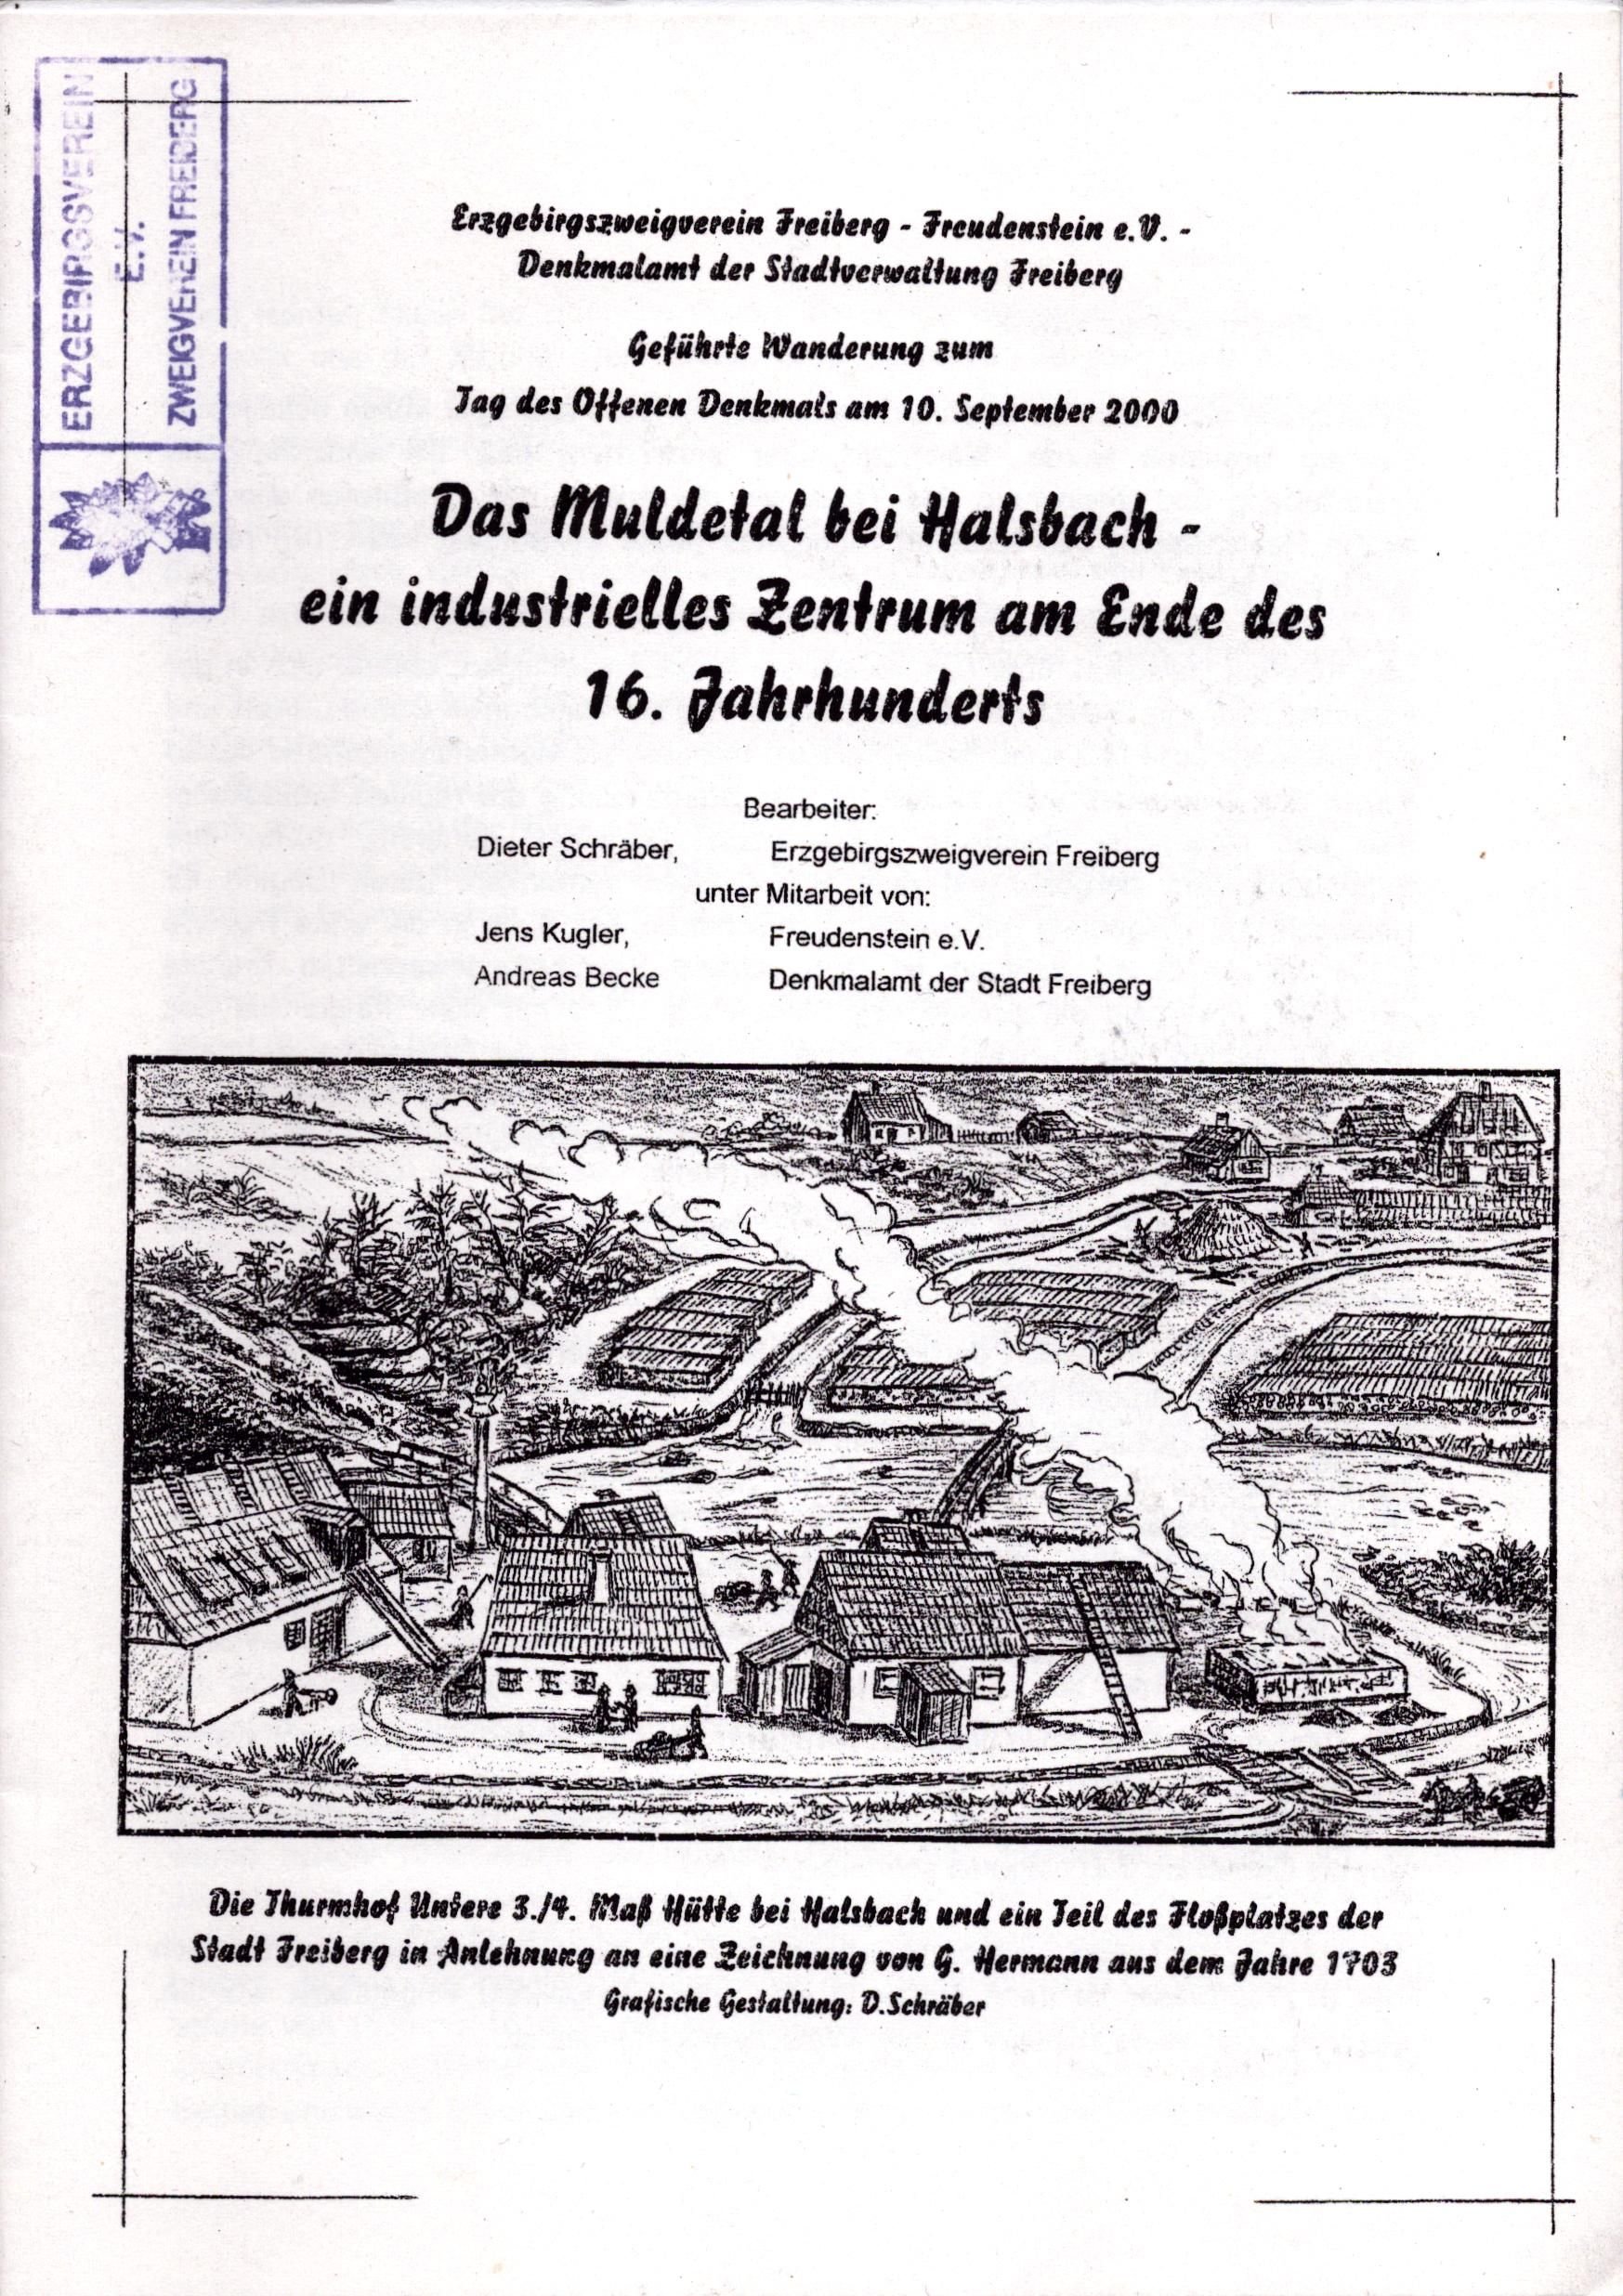 Das Muldental bei Halsbach - ein industrielles Zentrum am Ende des 16. Jahrhunderts (Archiv SAXONIA-FREIBERG-STIFTUNG CC BY-NC-SA)